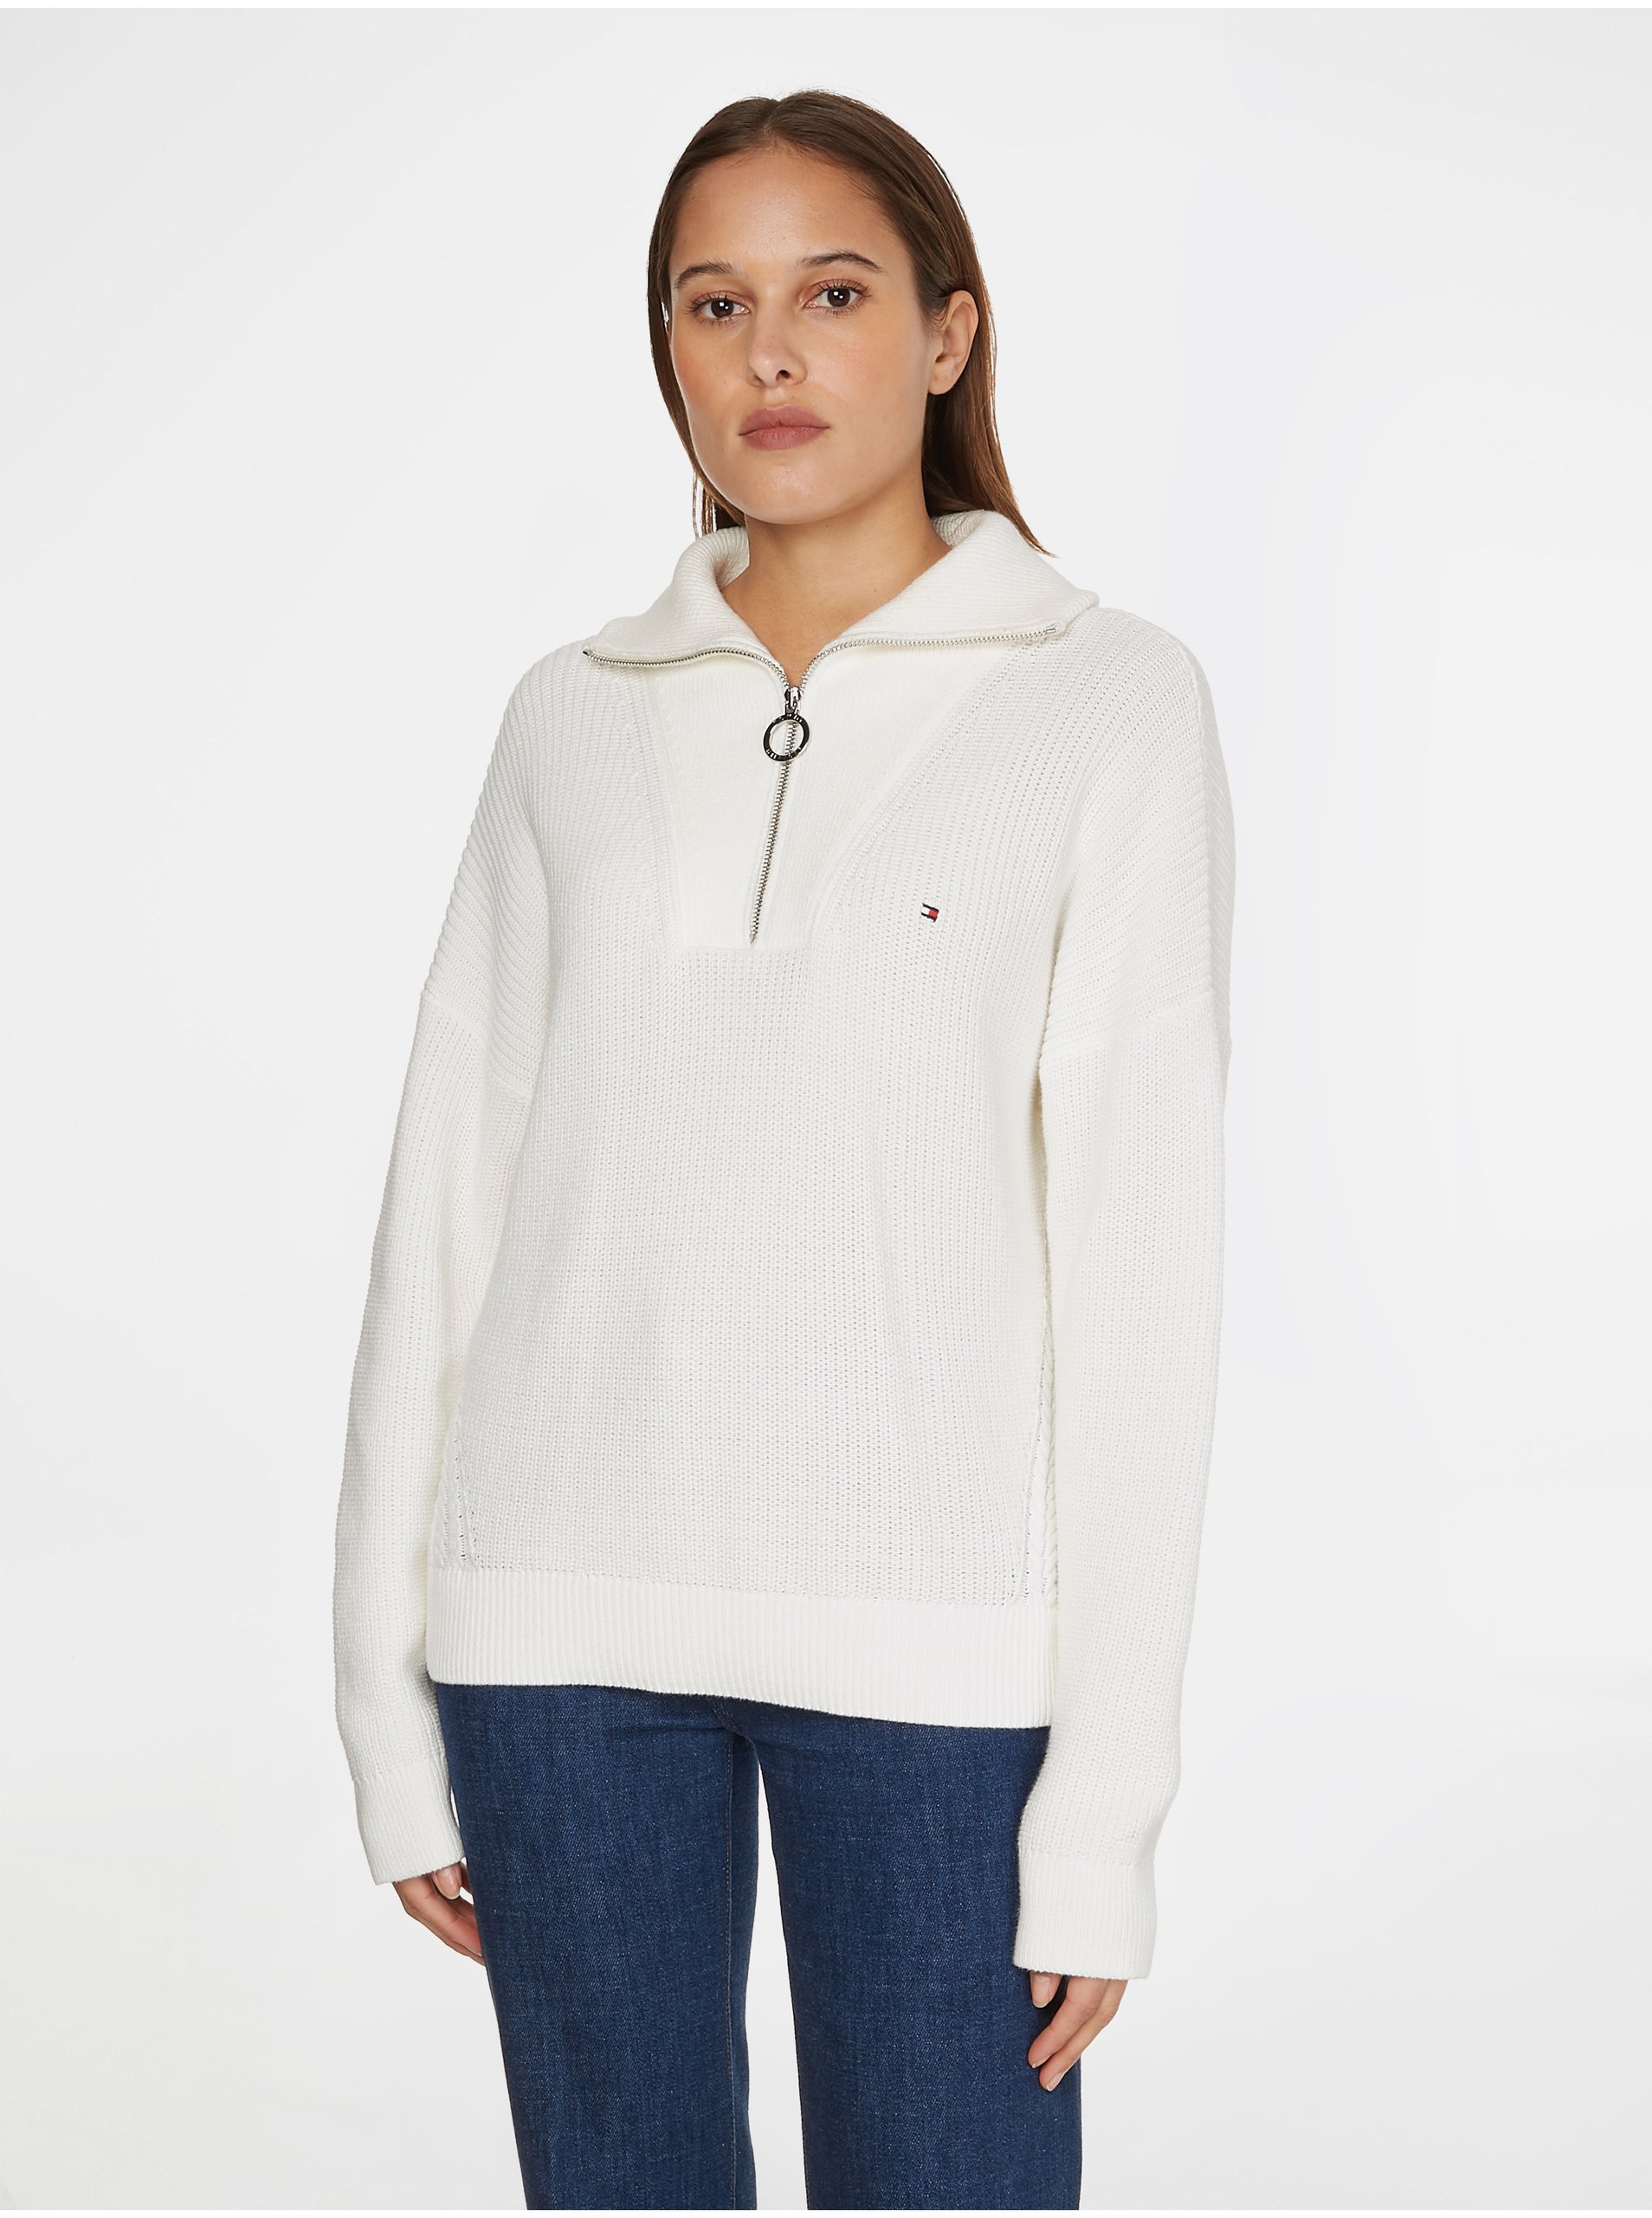 E-shop Bílý dámský svetr s límcem Tommy Hilfiger